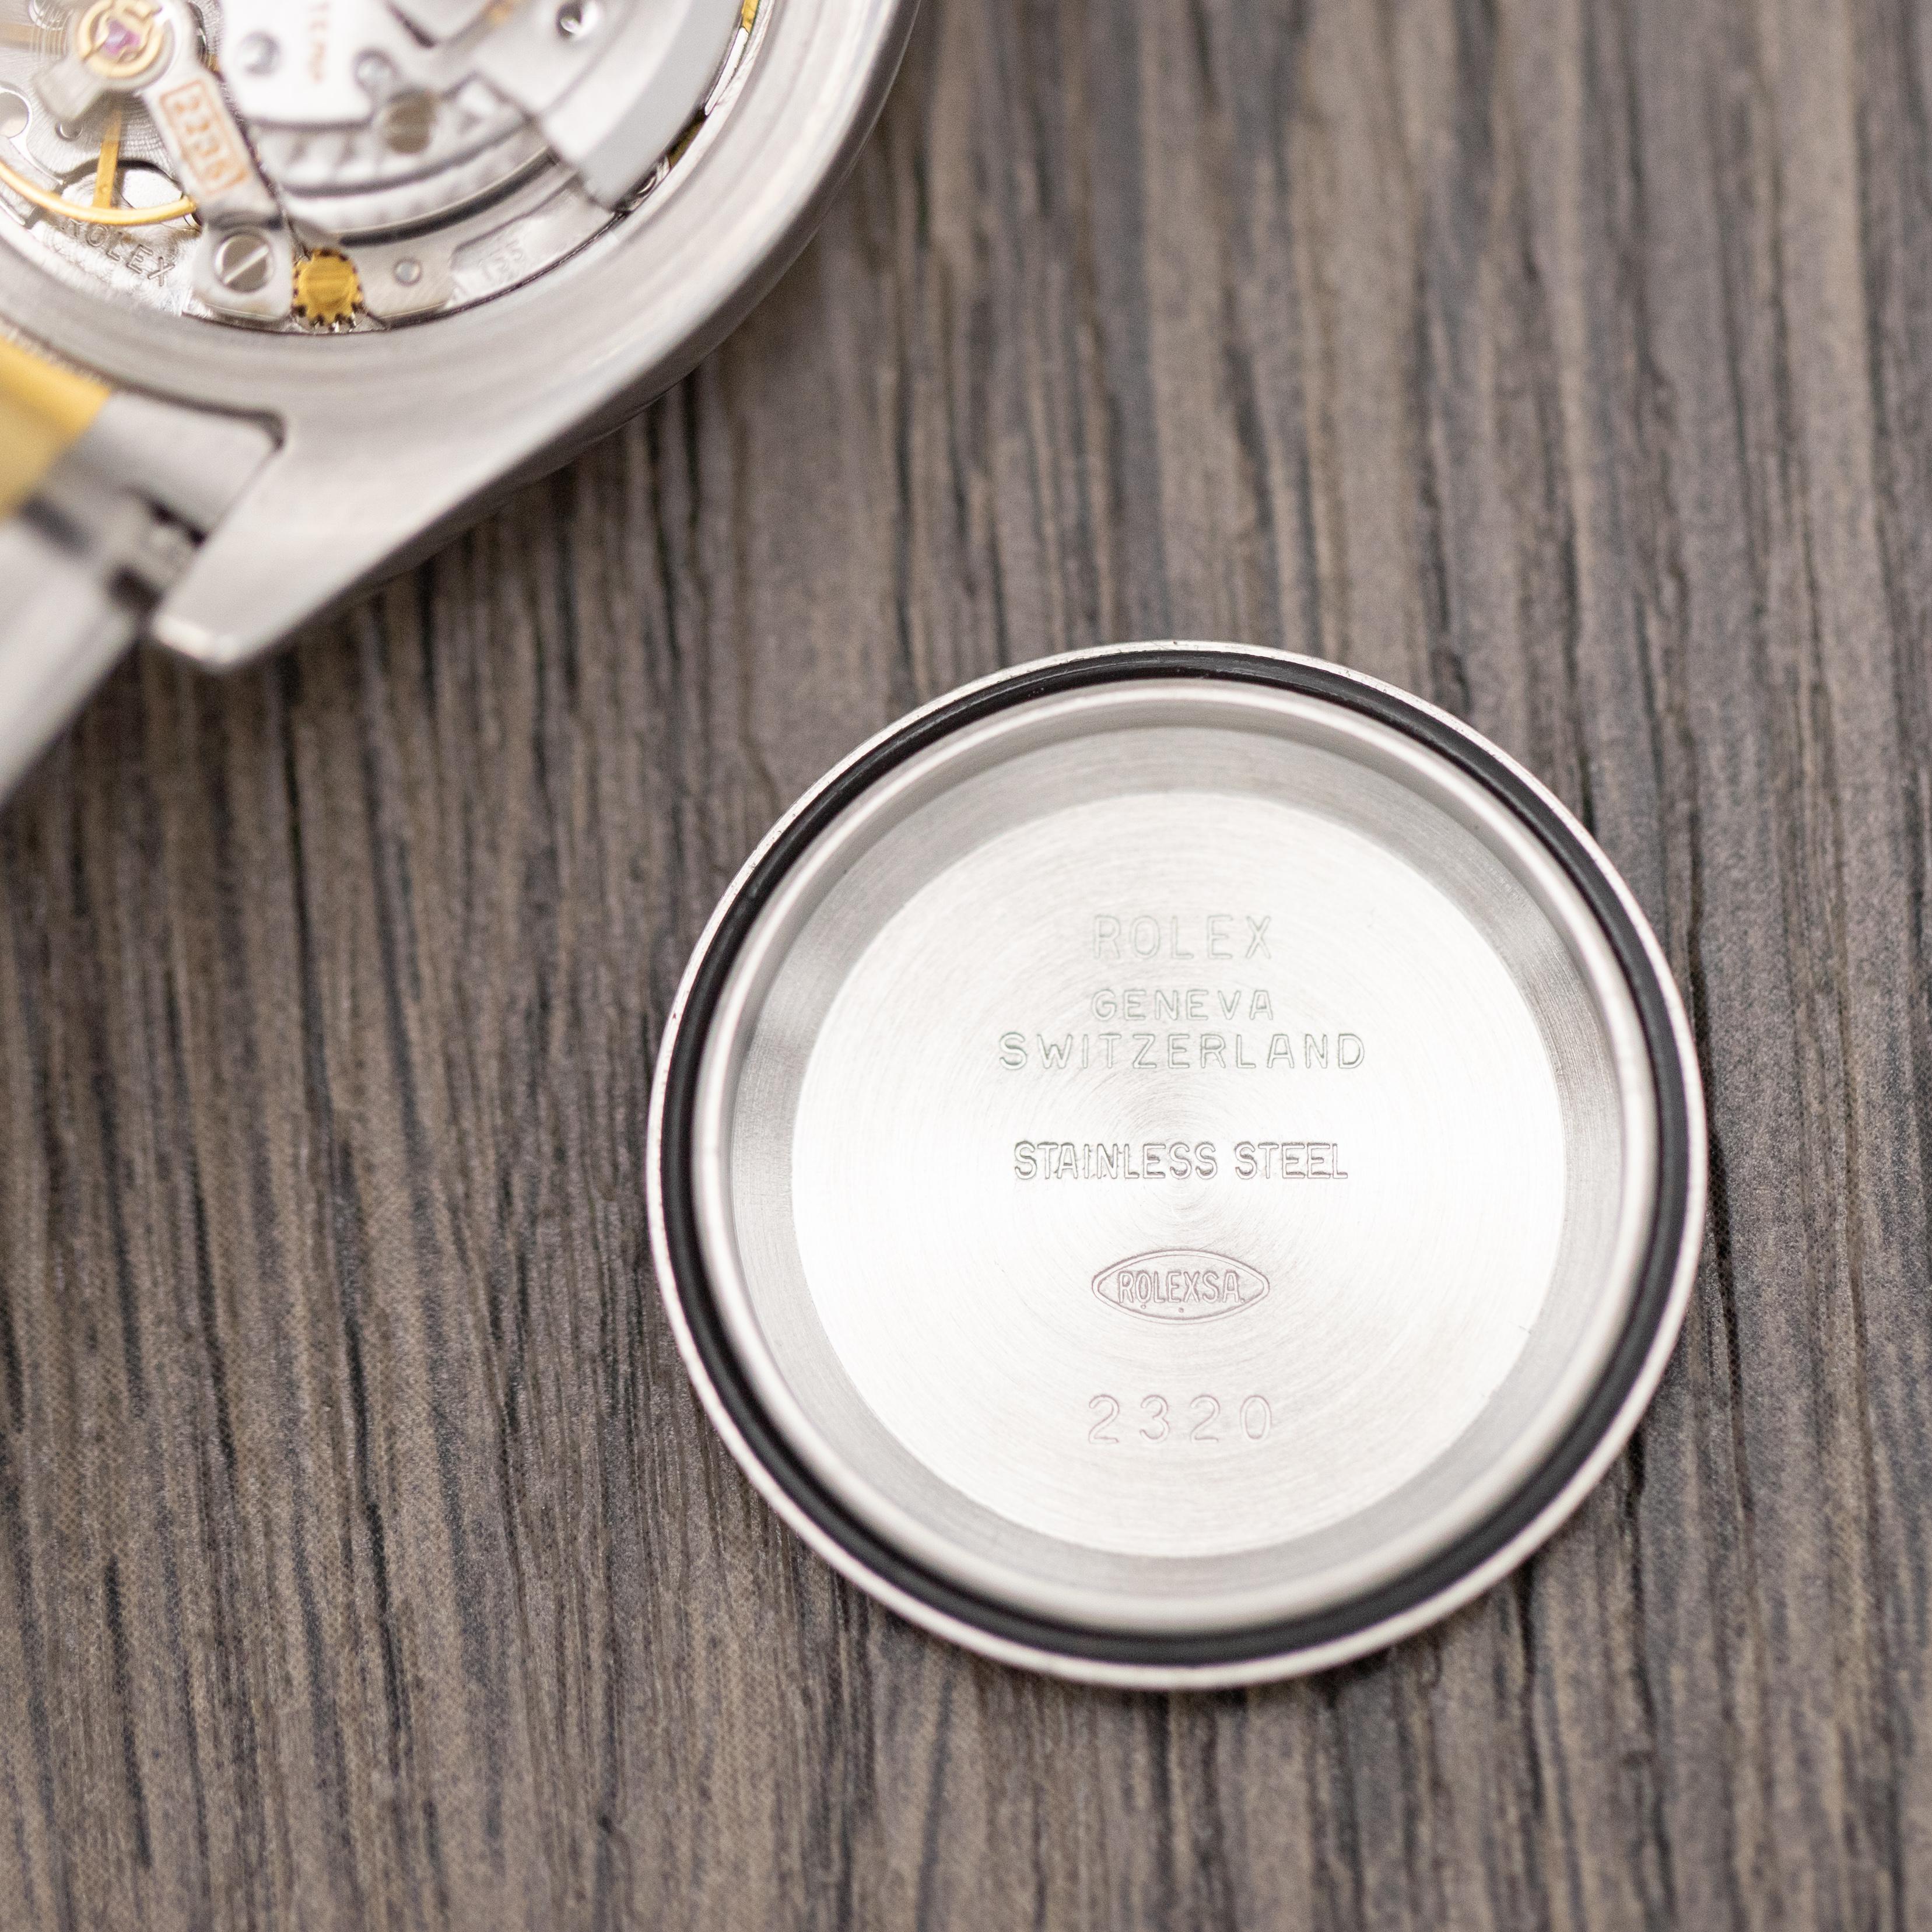 Rolex Oyster Perpetual Lady Datejust automatique - Montre vintage pour femmes - Jubilee 7